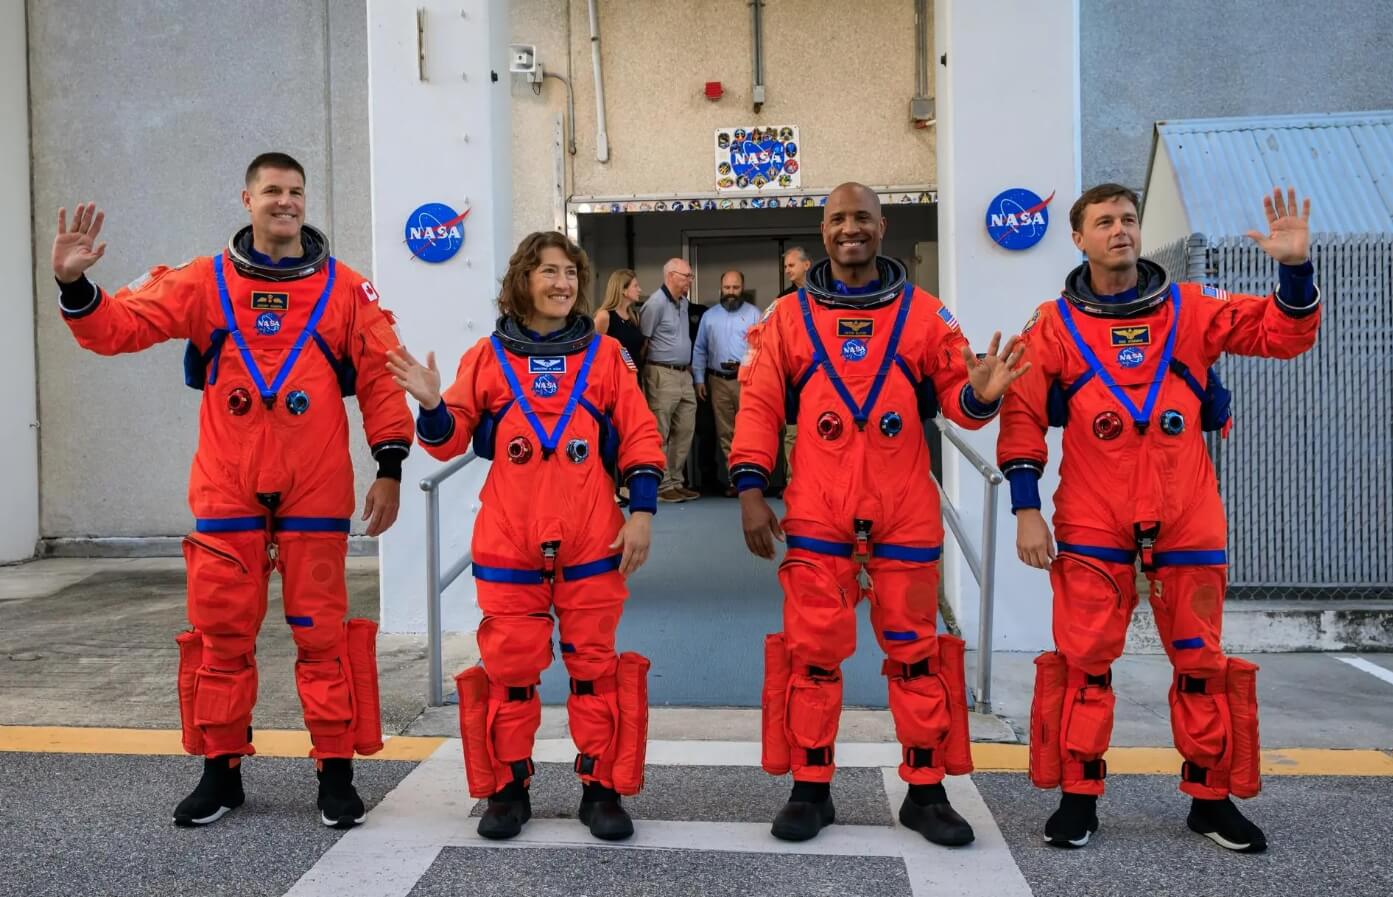 Новая дата отправки людей на Луну. Отправка людей на Луну — рискованное дело, поэтому NASA нужно оценить все риски и обеспечить астронавтам полную безопасность. Фото.